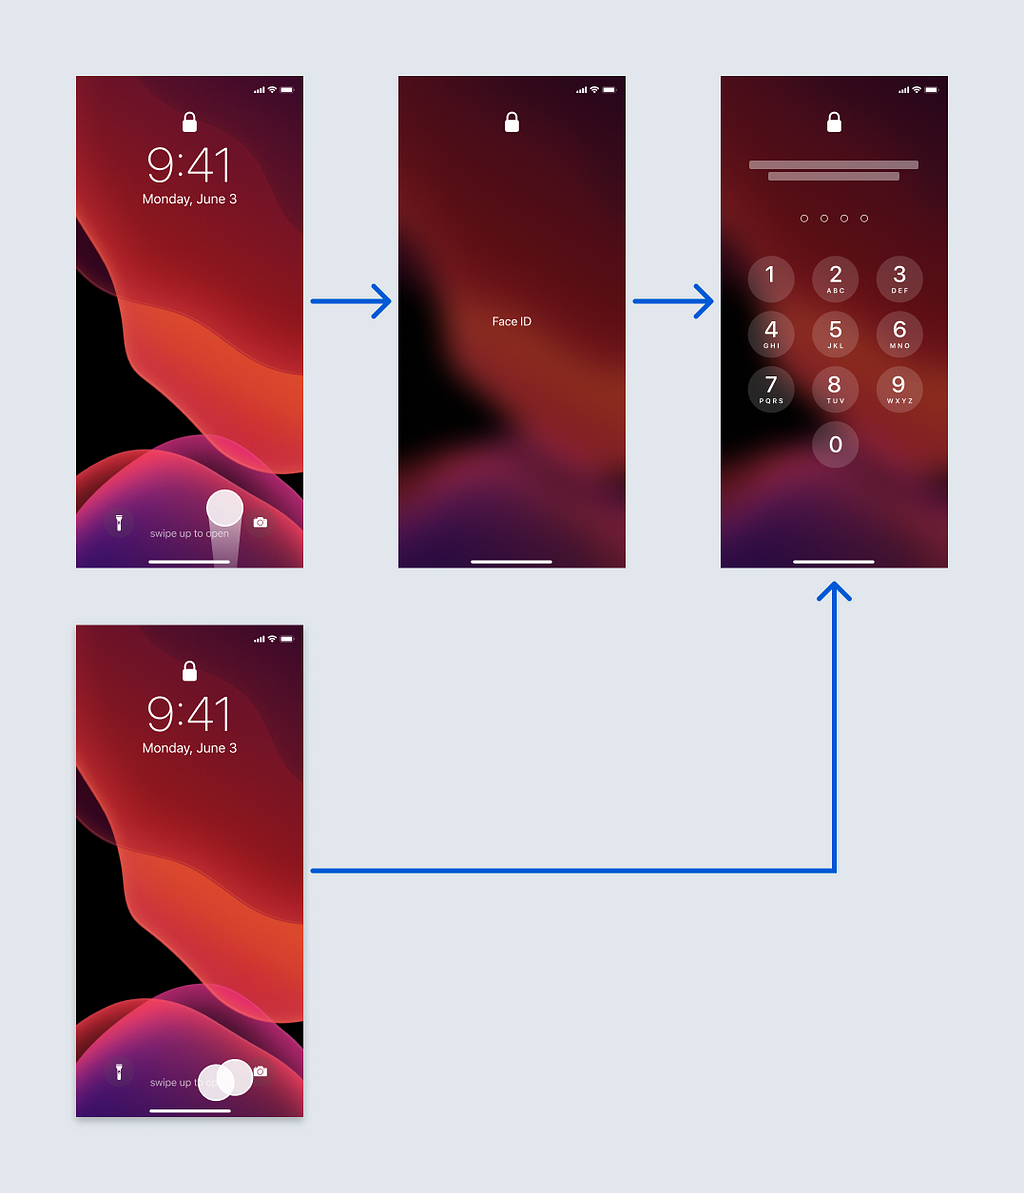 Uma ilustração do fluxo de desbloqueio do iphone explicado no artigo: deslizar para Face ID e um duplo toque para senha